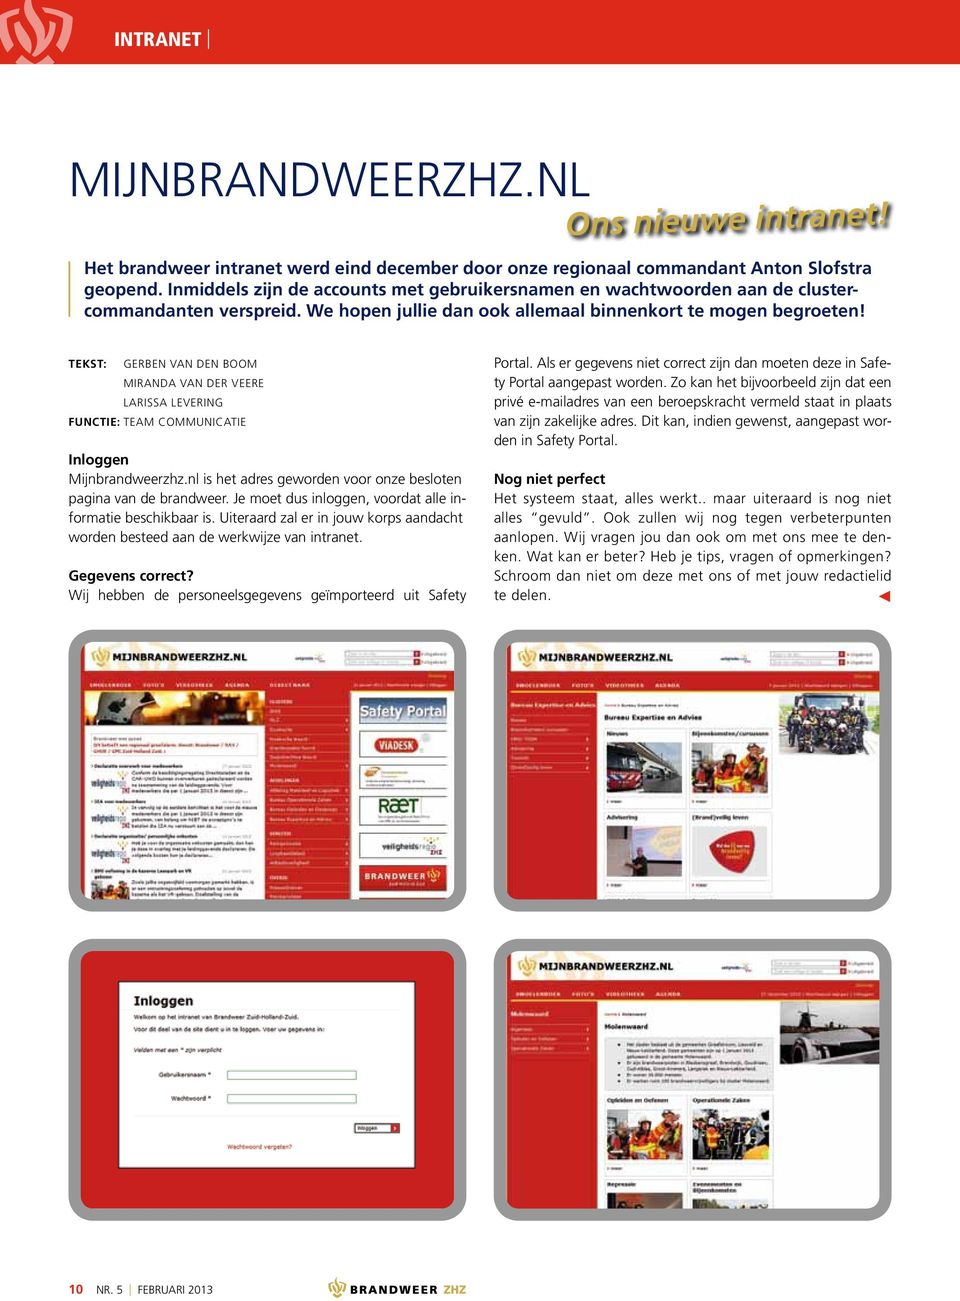 Gerben van den Boom Miranda van der Veere Larissa Levering Functie: Team Communicatie Inloggen Mijnbrandweerzhz.nl is het adres geworden voor onze besloten pagina van de brandweer.